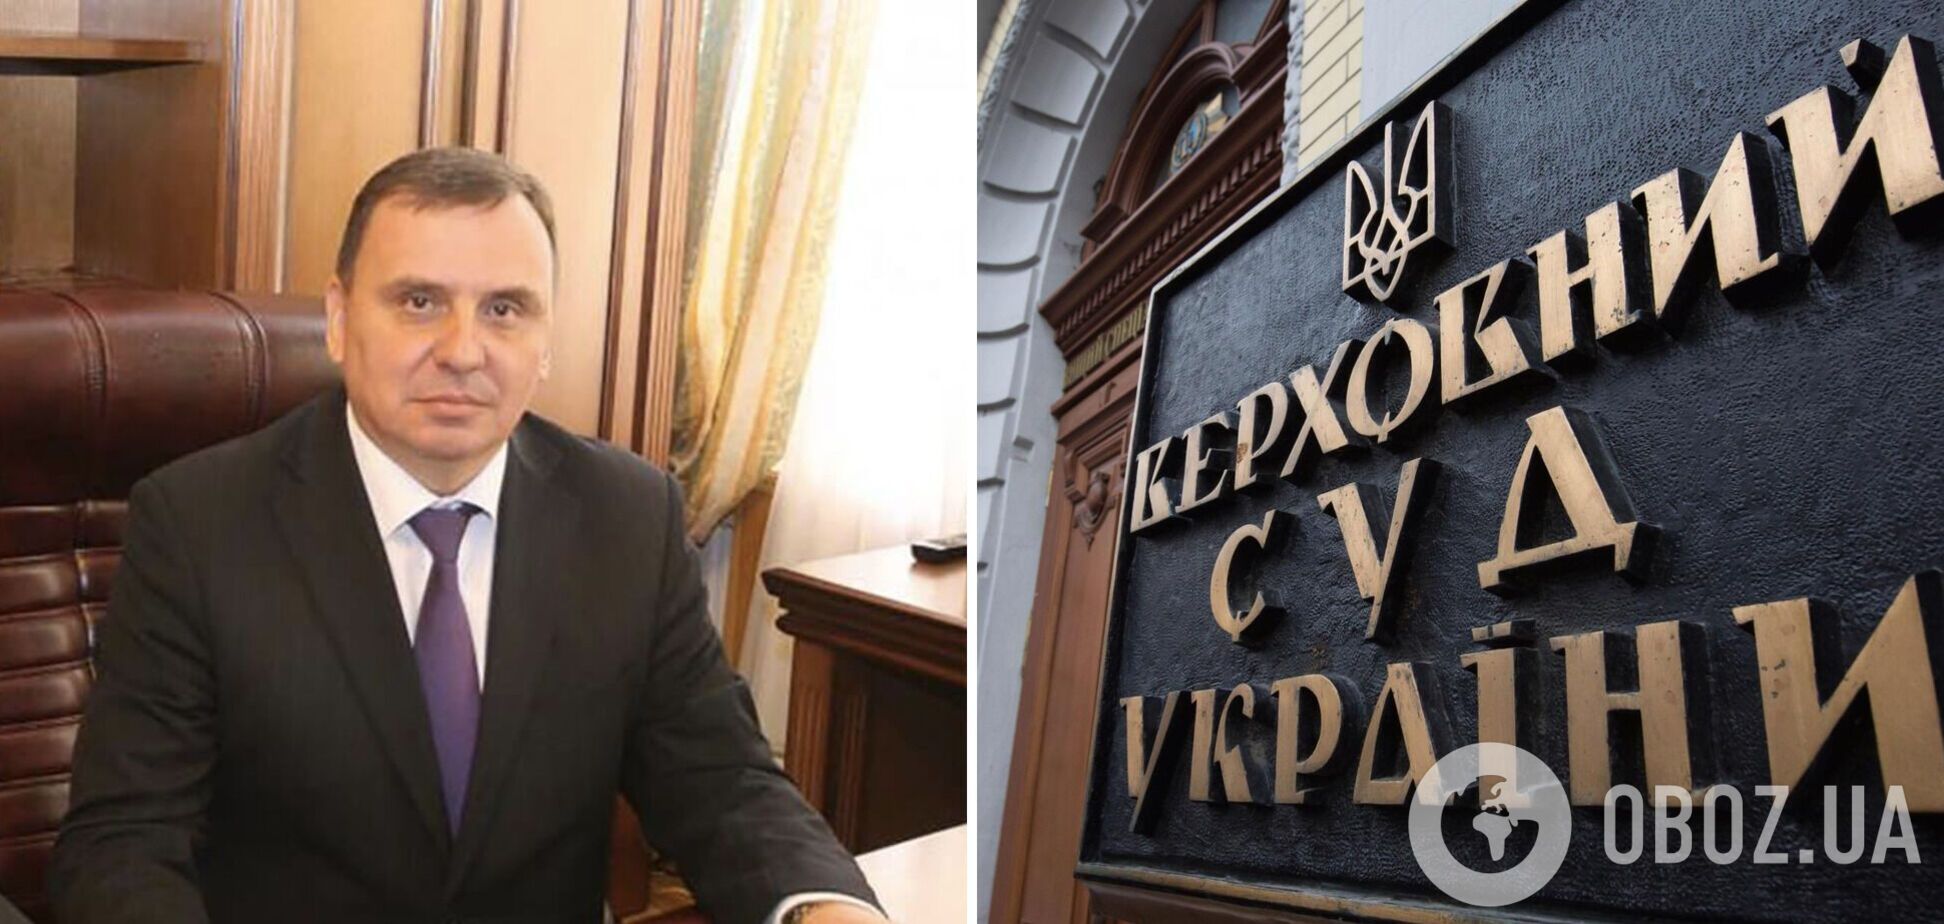 Новим головою Верховного суду став Станіслав Кравченко: що про нього відомо